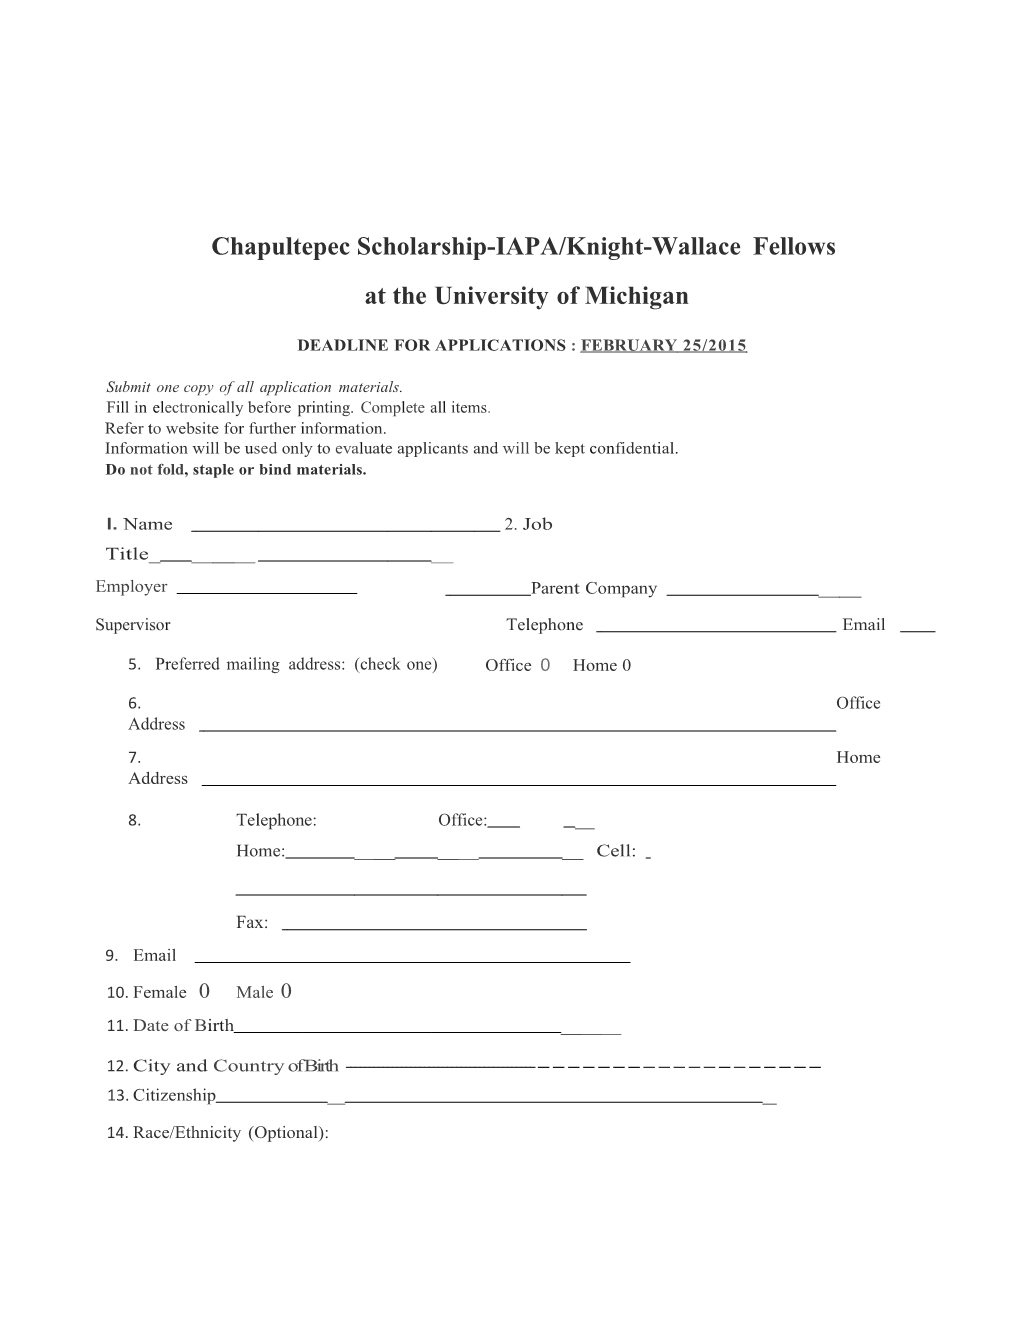 Chapultepec Scholarship-IAPA/Knight-Wallacefellows